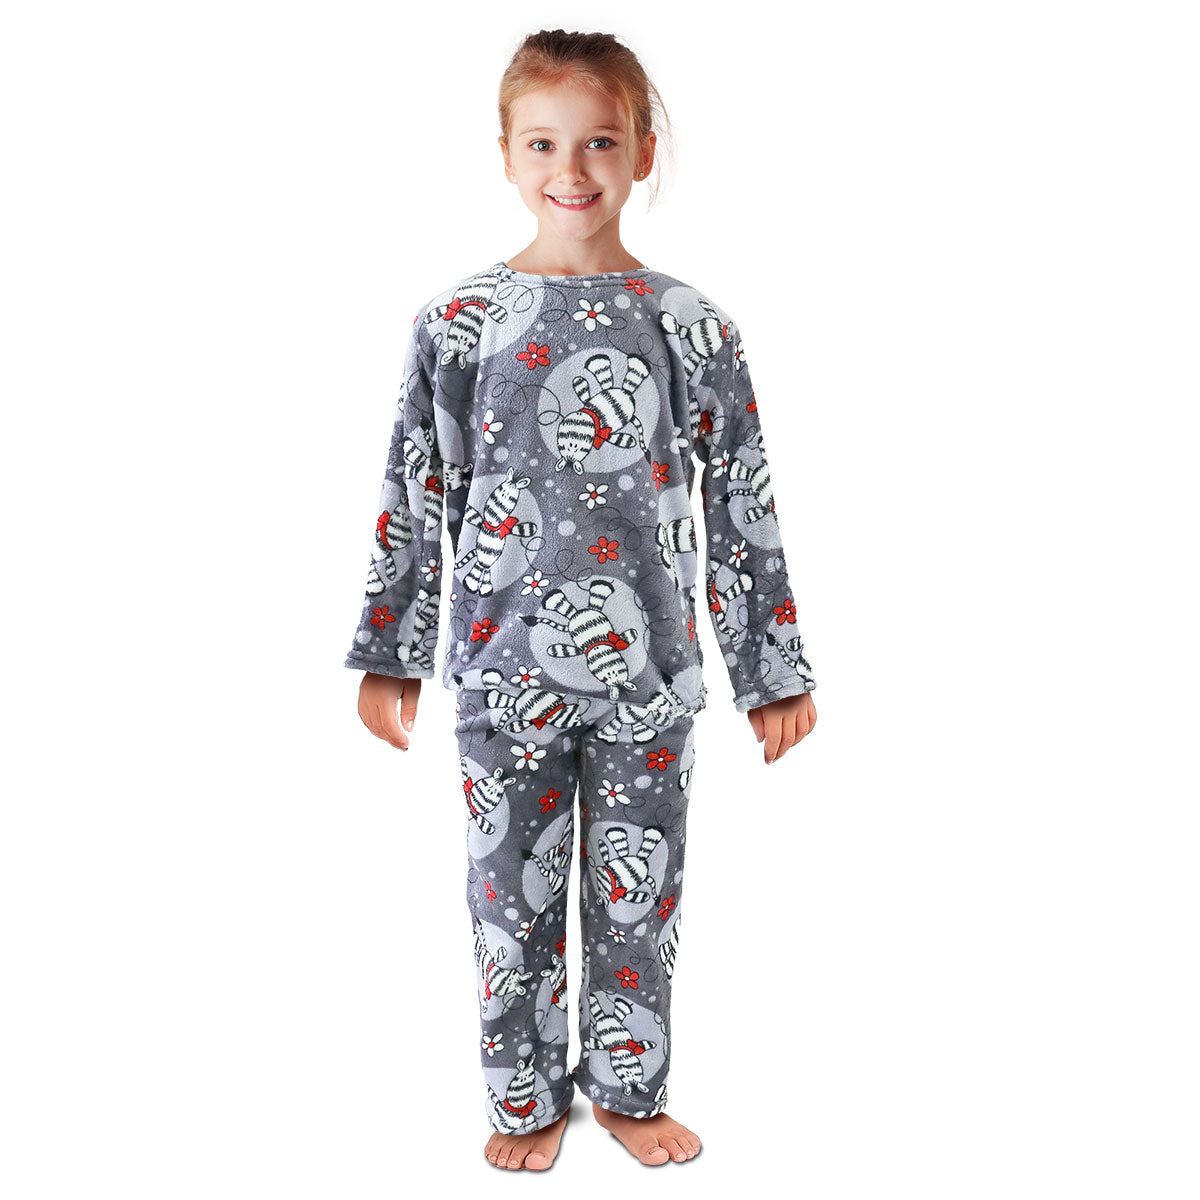 Pijama Polar Infantil, color Gris con Diseño de Abejitas, 2 pzas.